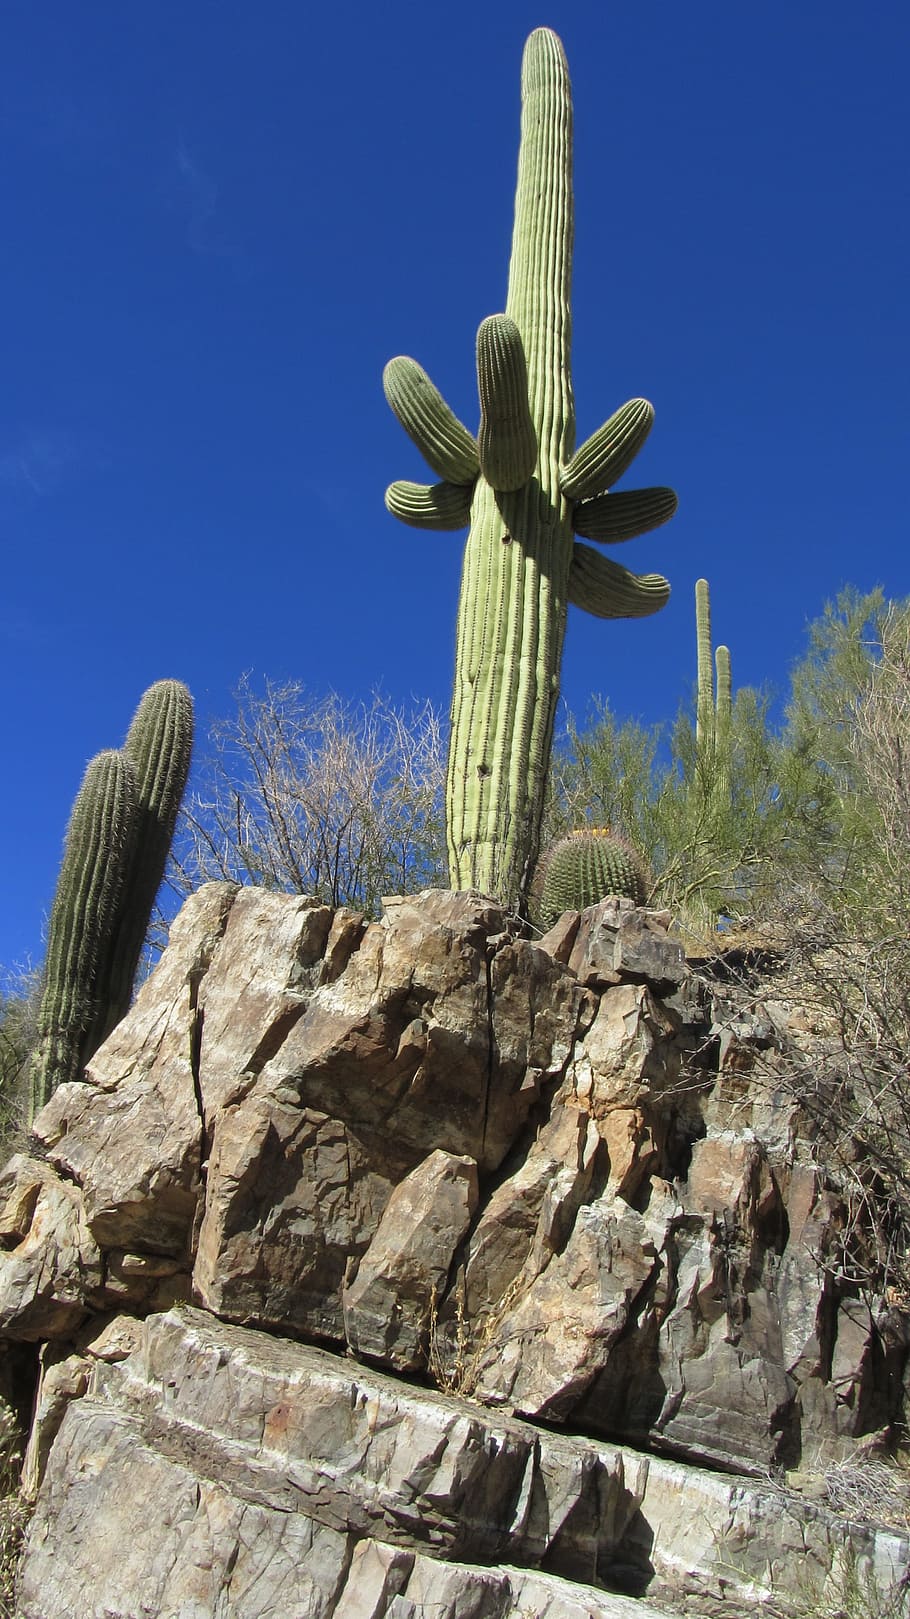 Cactus, Tucson, Arizona, Landscape, tucson, arizona, plant, natural, botanical, organic, botany